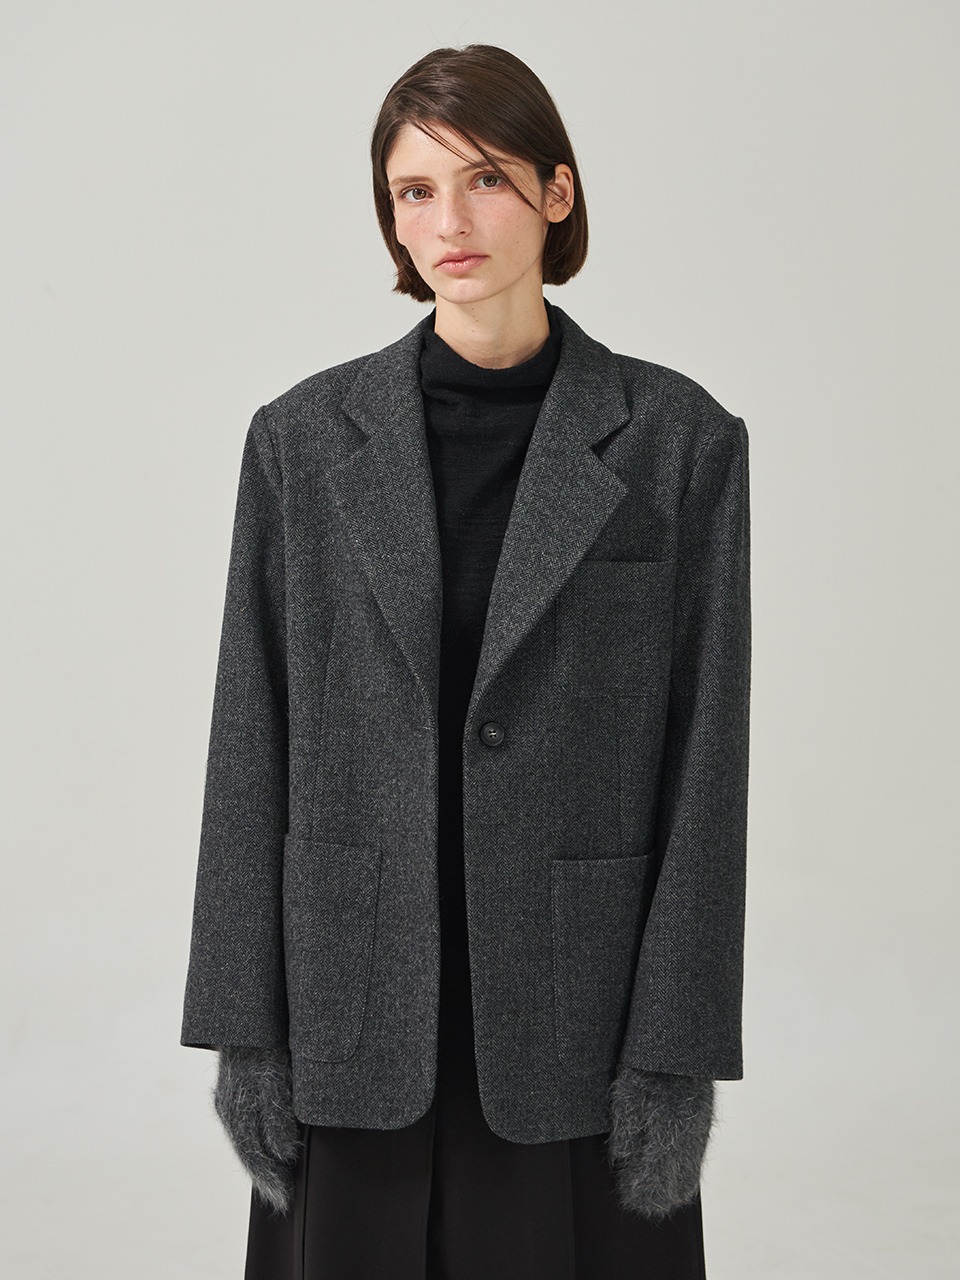 herringbone Wool Jacket Charcoal Gray